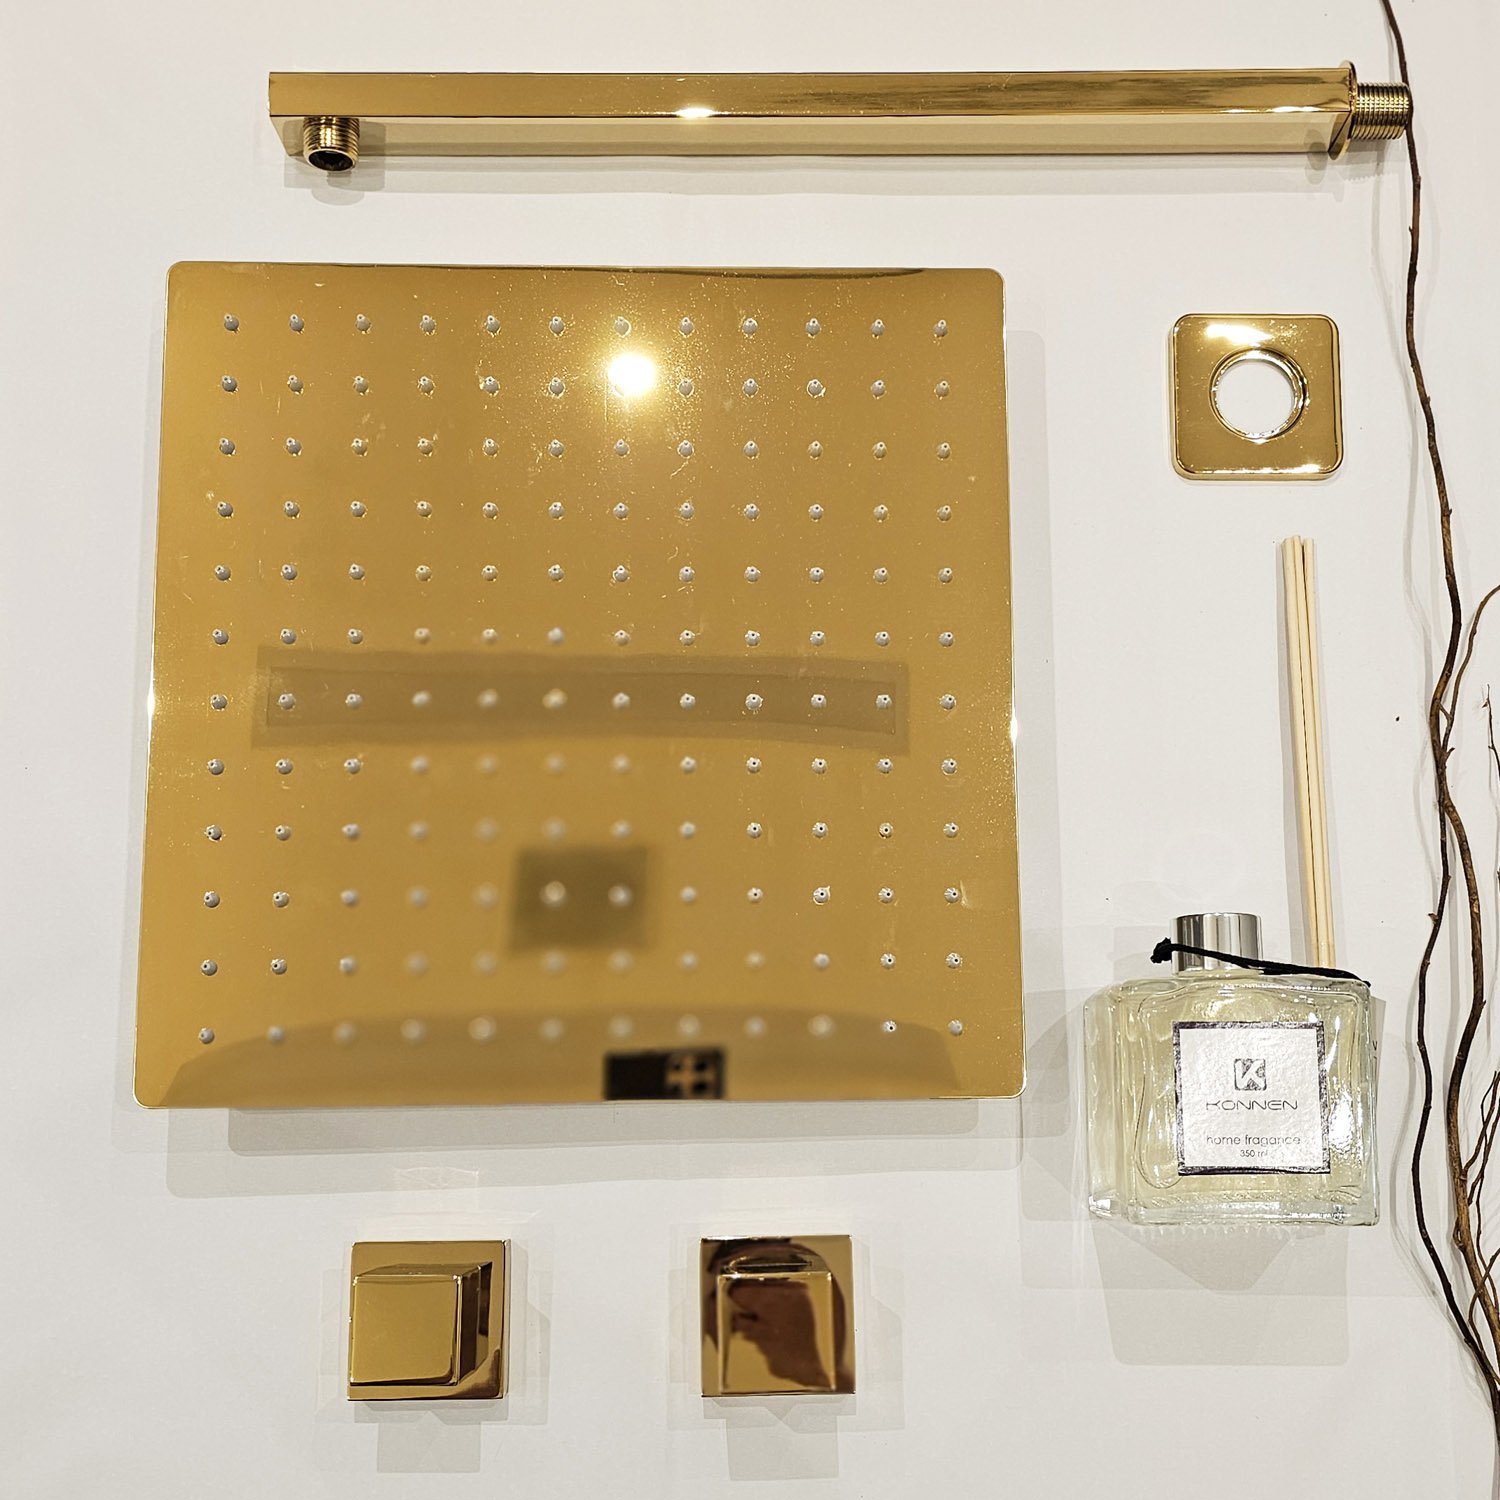 Kit Ducha Simples - Square- Ducha Quadrada de Parede 30x30cm + 2 Acabamentos de Registro - Dourado K